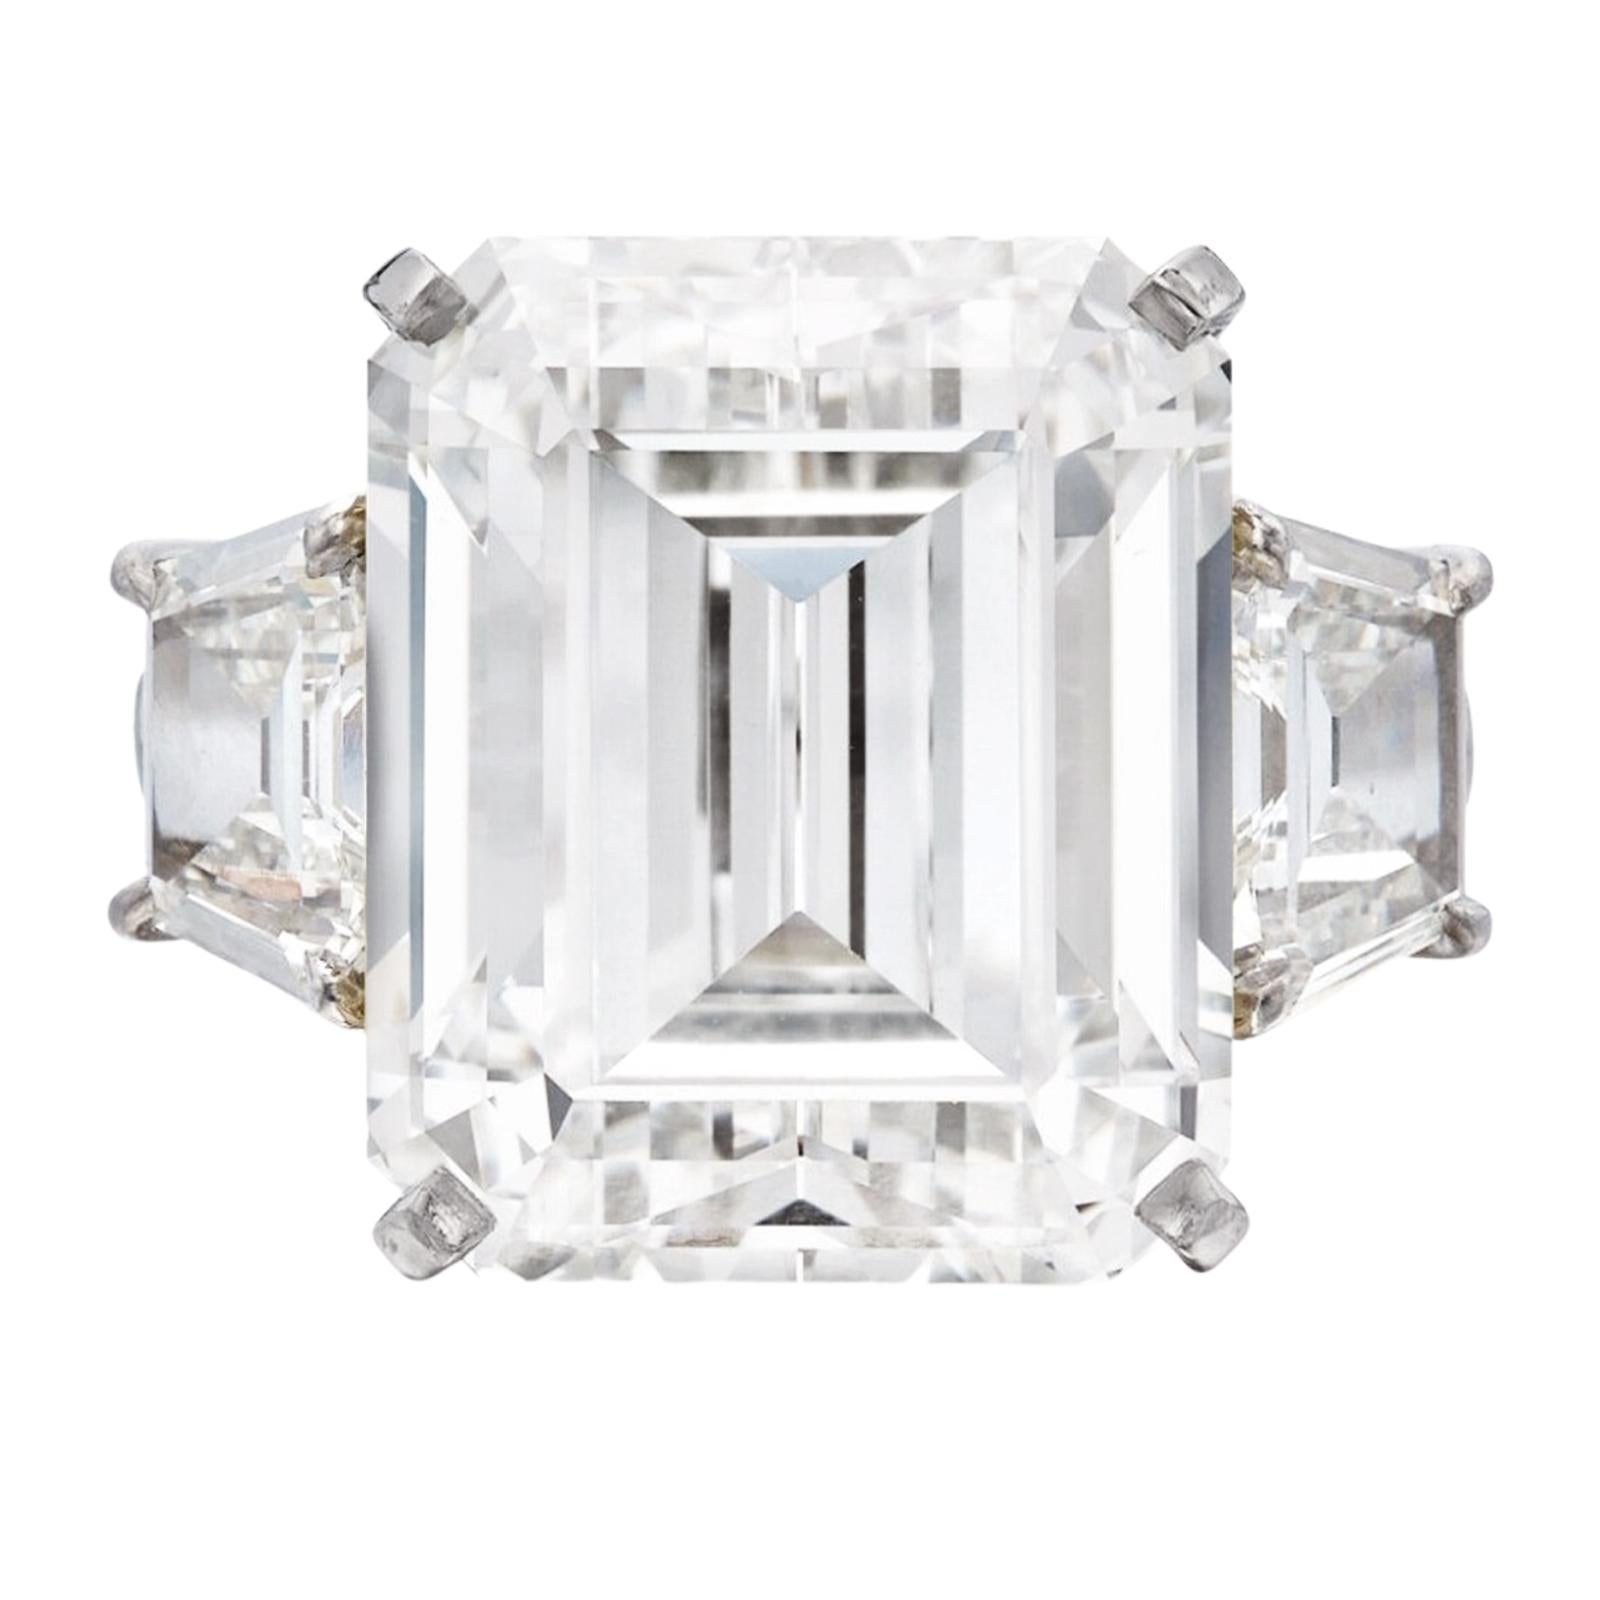 La bague en diamant émeraude de 5,00 carats de couleur E VS en or blanc 18 carats, ornée de baguettes trapézoïdales, est un bijou exquis et opulent. Au centre de cette bague brille un captivant diamant taille émeraude d'un poids impressionnant de